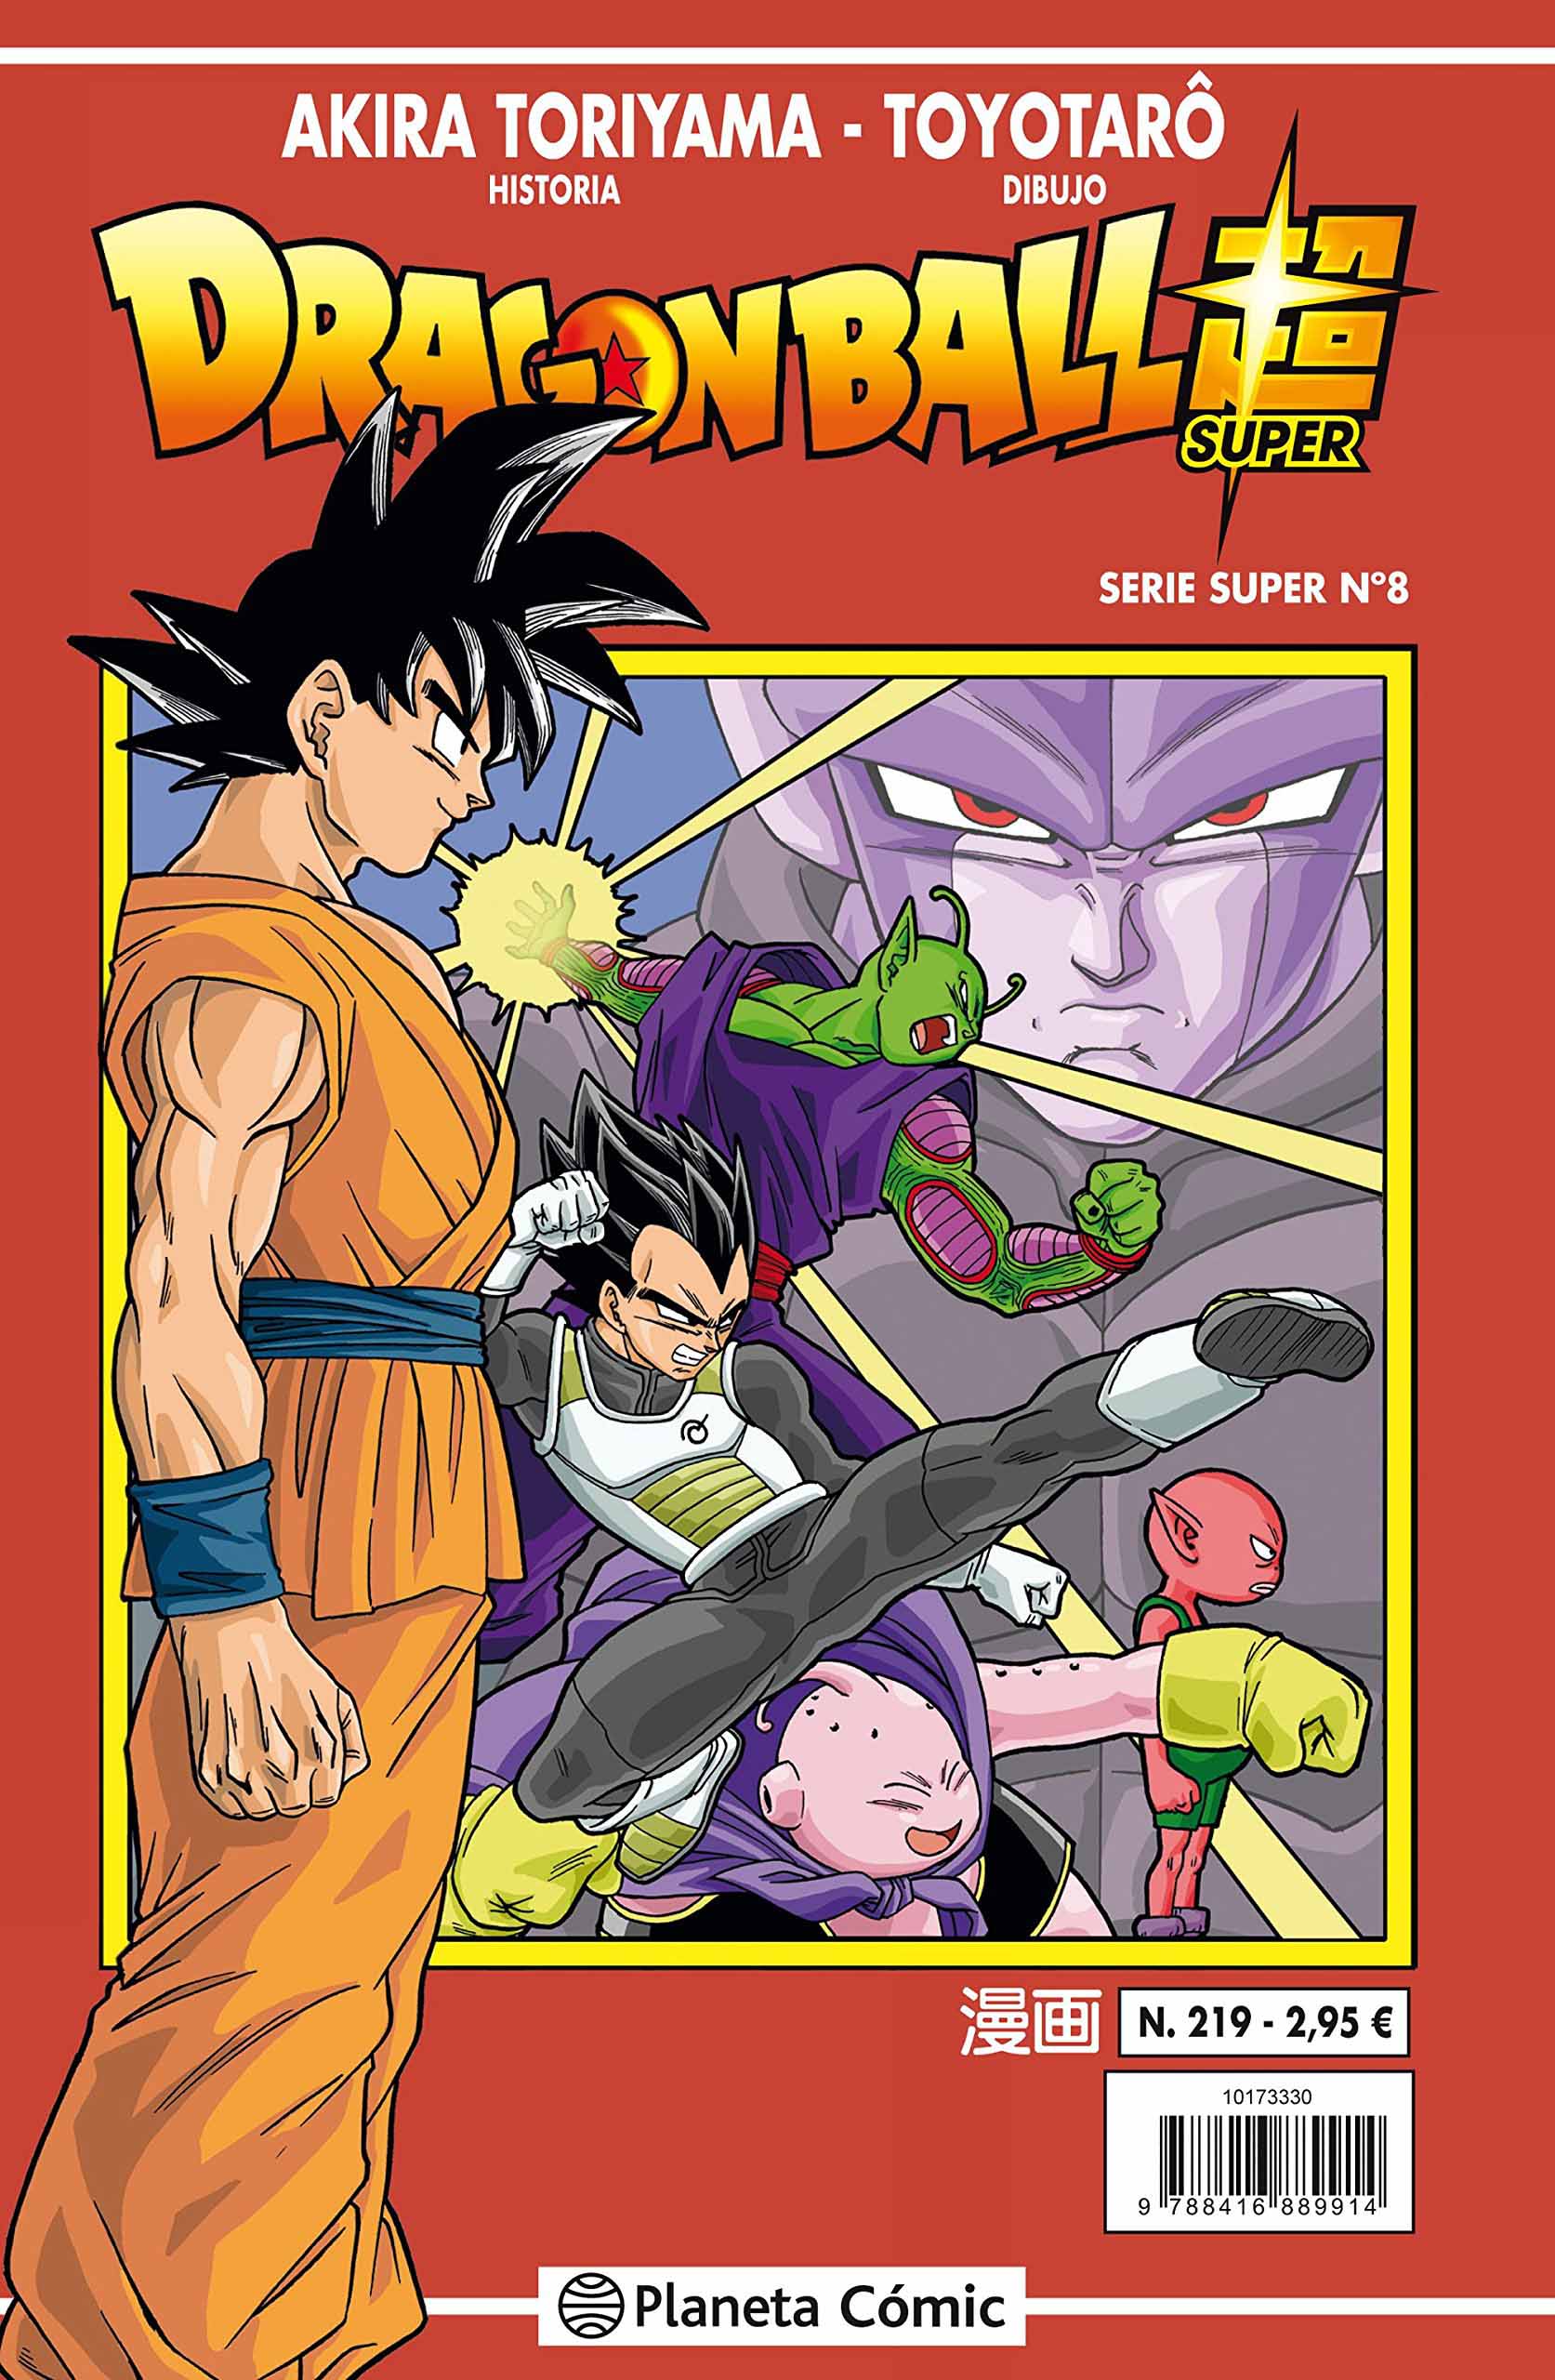 Reseña: 'Dragon Ball Super' nº 8 / nº 219 Serie Roja